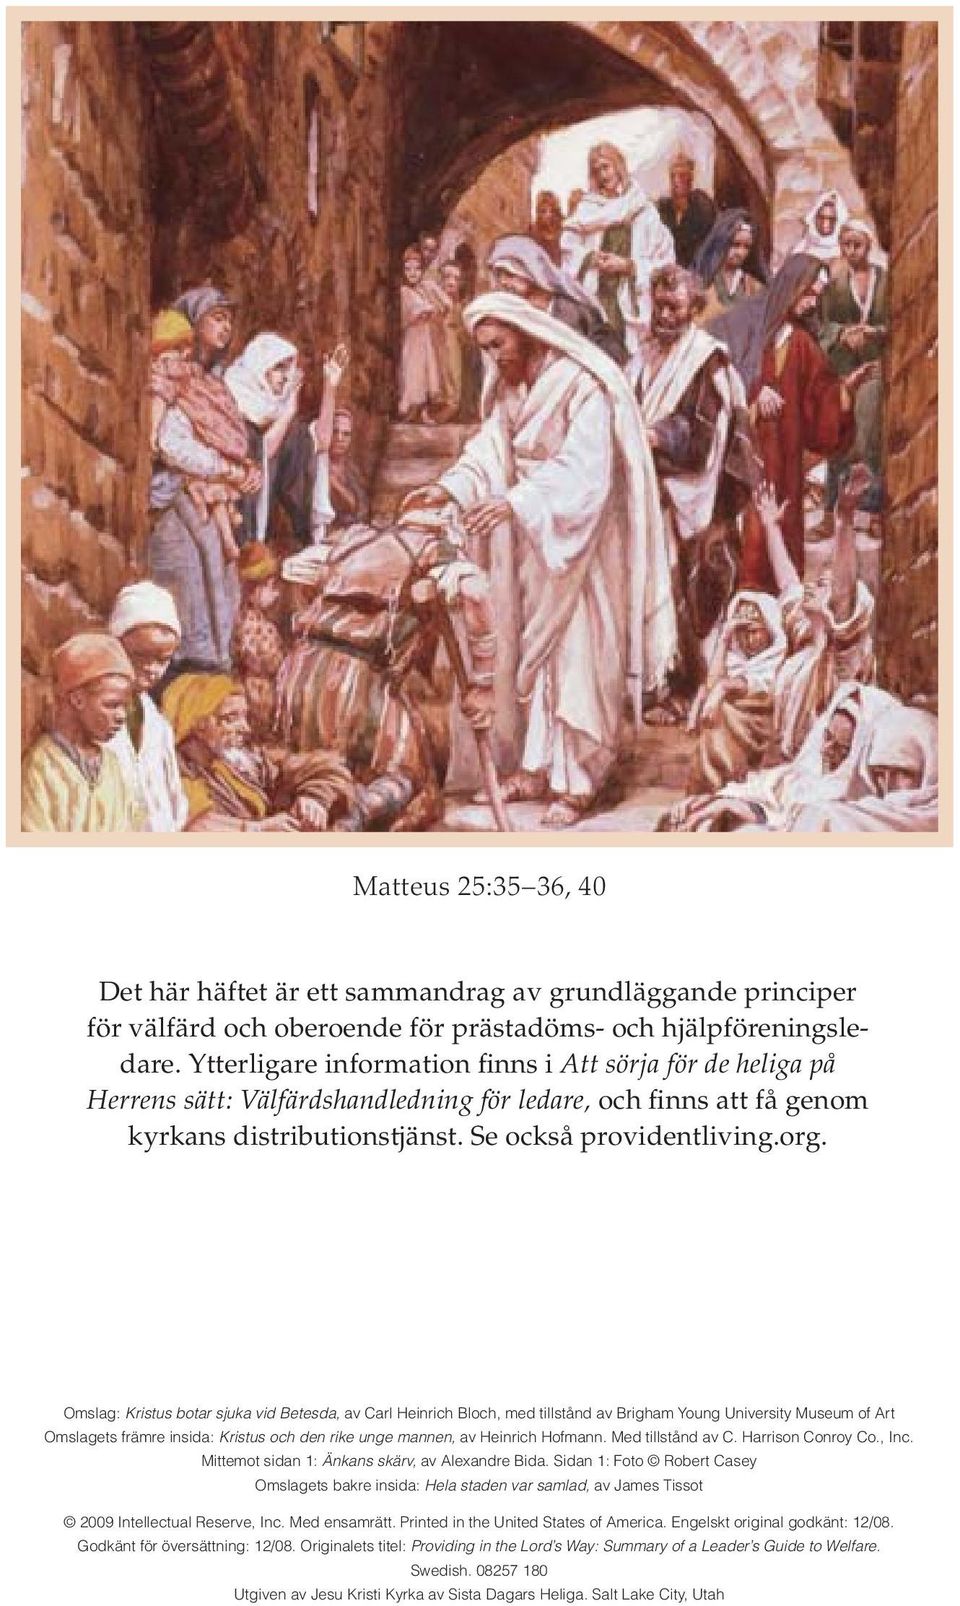 Omslag: Kristus botar sjuka vid Betesda, av Carl Heinrich Bloch, med tillstånd av Brigham Young University Museum of Art Omslagets främre insida: Kristus och den rike unge mannen, av Heinrich Hofmann.